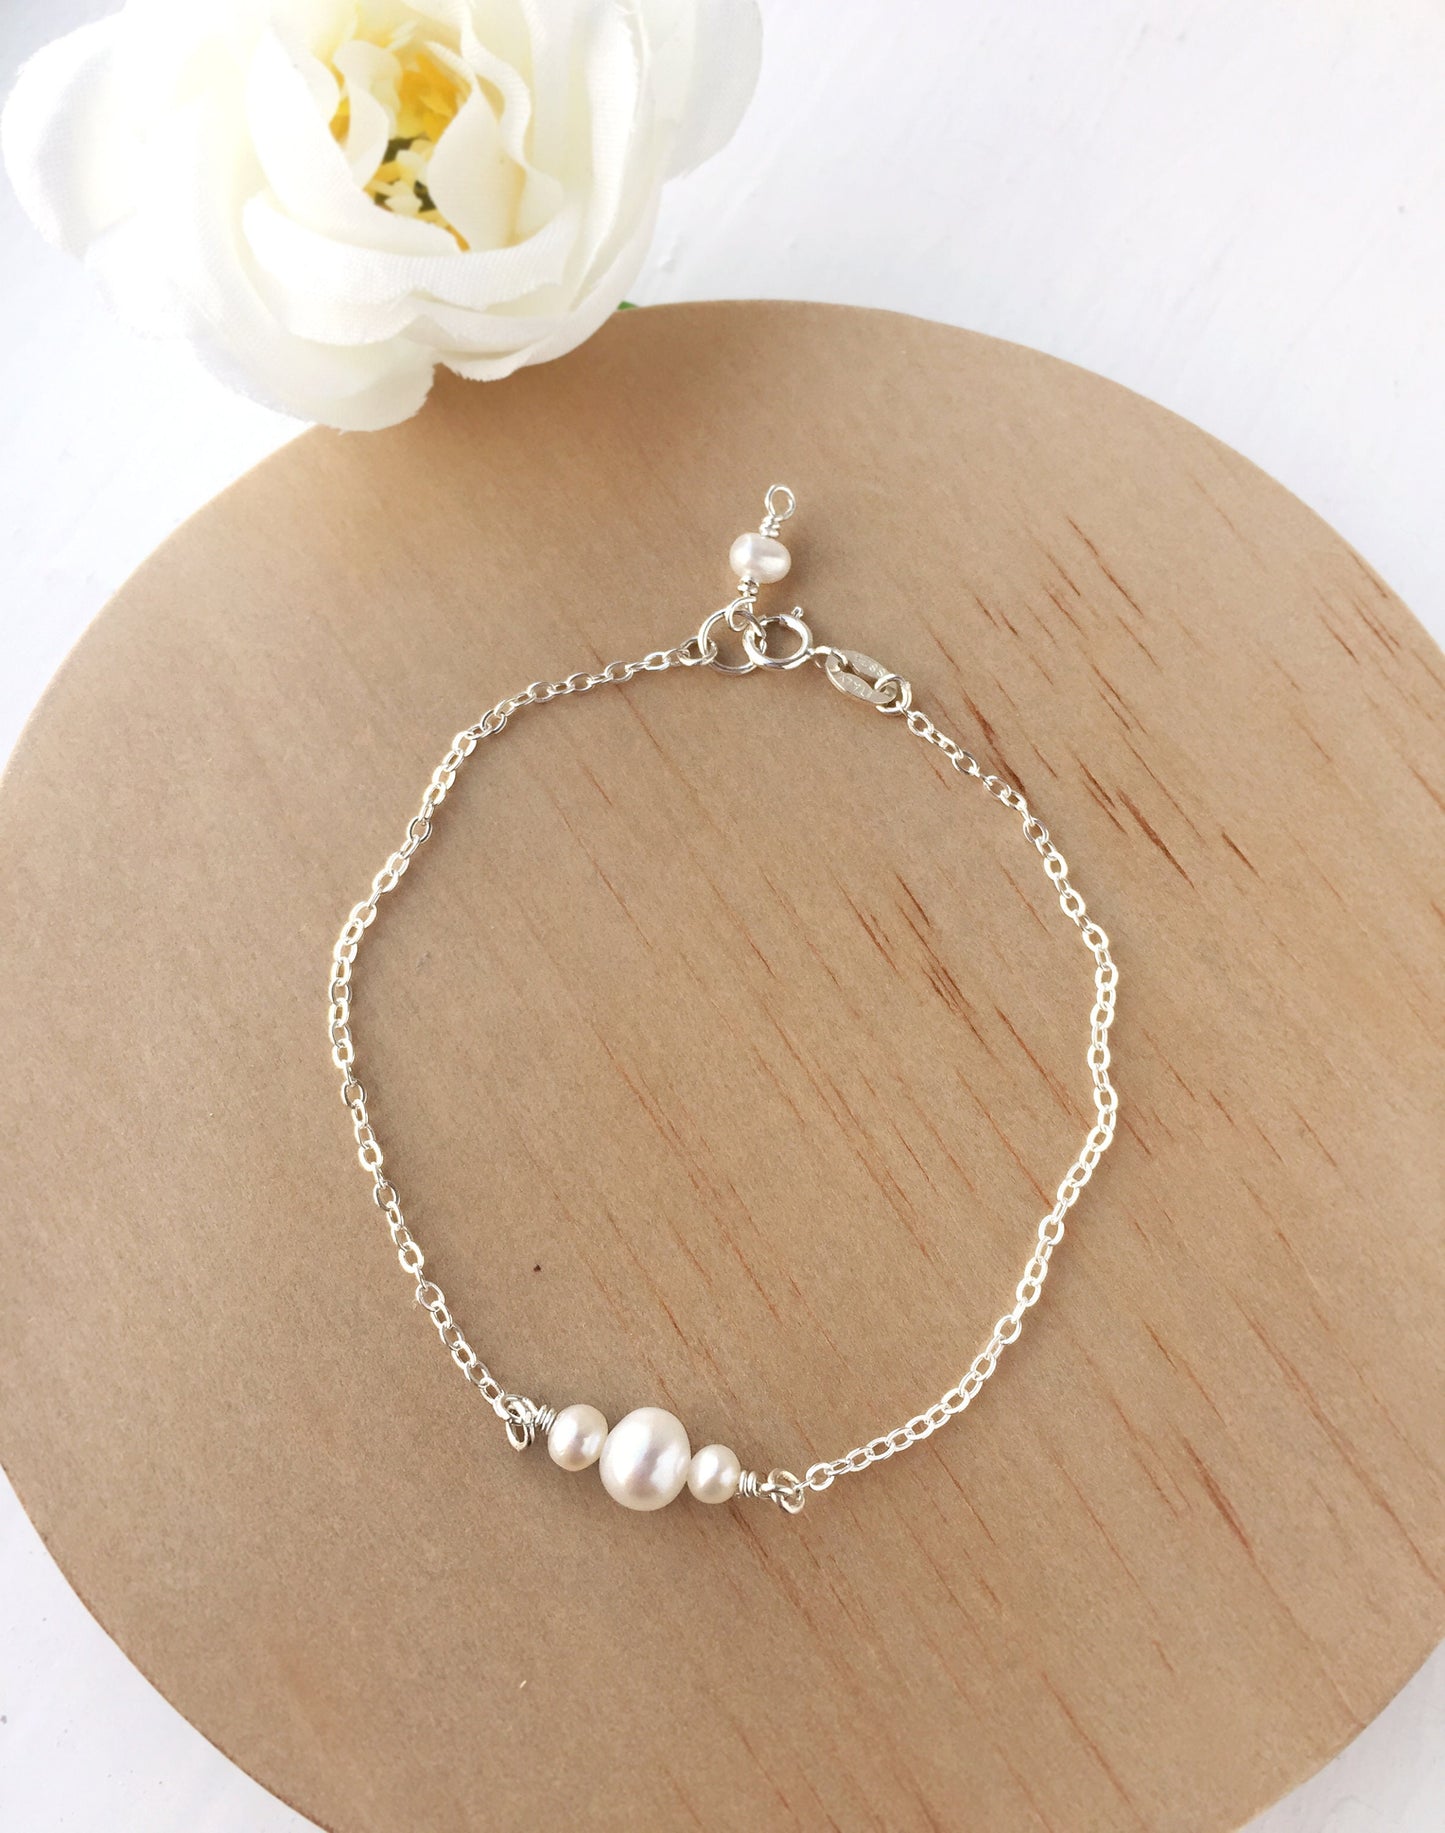 Minimalist Three Pearl Bracelet